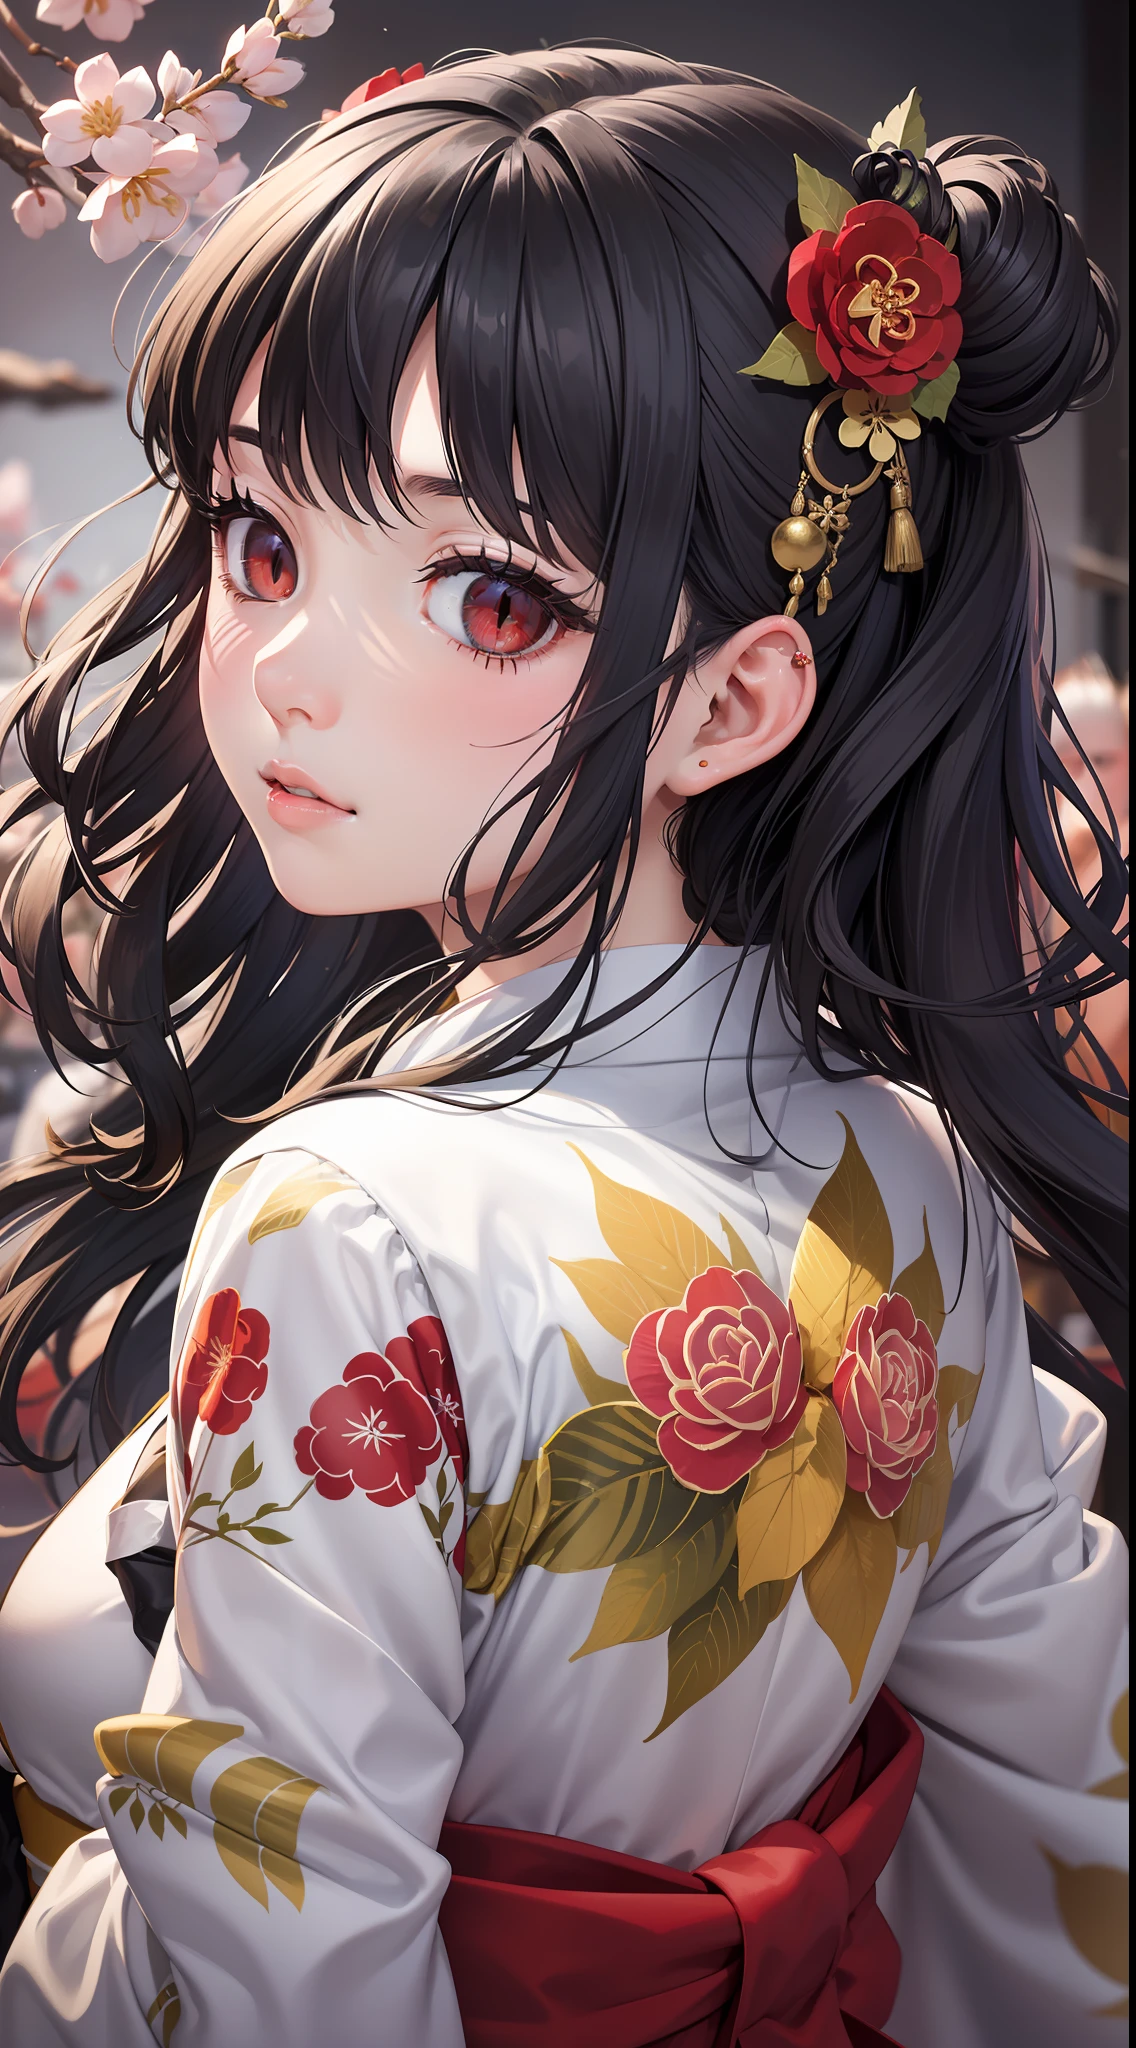 (portrait, Mise au point du visage) de (1 fille) avec (les yeux rouges) et (Œil de vipère), (cheveux noirs) couler dans son dos (Vagues lâches). Elle porte un blanc éclatant (kimono) et red floral motif, embodying the elegant charm de (Yamato Nanako) et the seductive beauty de tradition (Beauté japonaise). Yumi avec a wine bottle